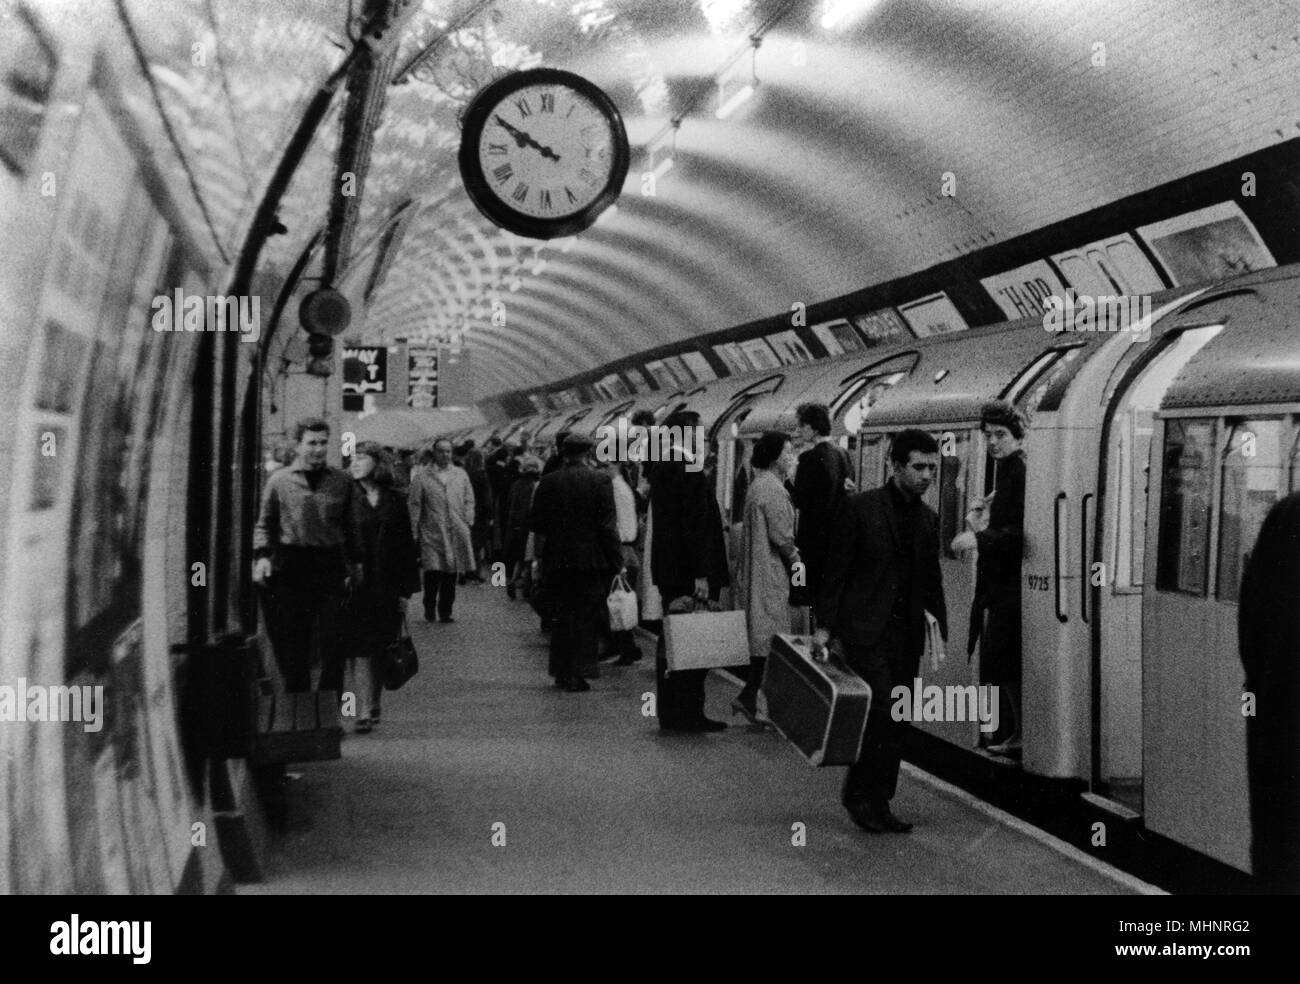 Scène dans une station de métro de Londres. Date : 1966 Banque D'Images